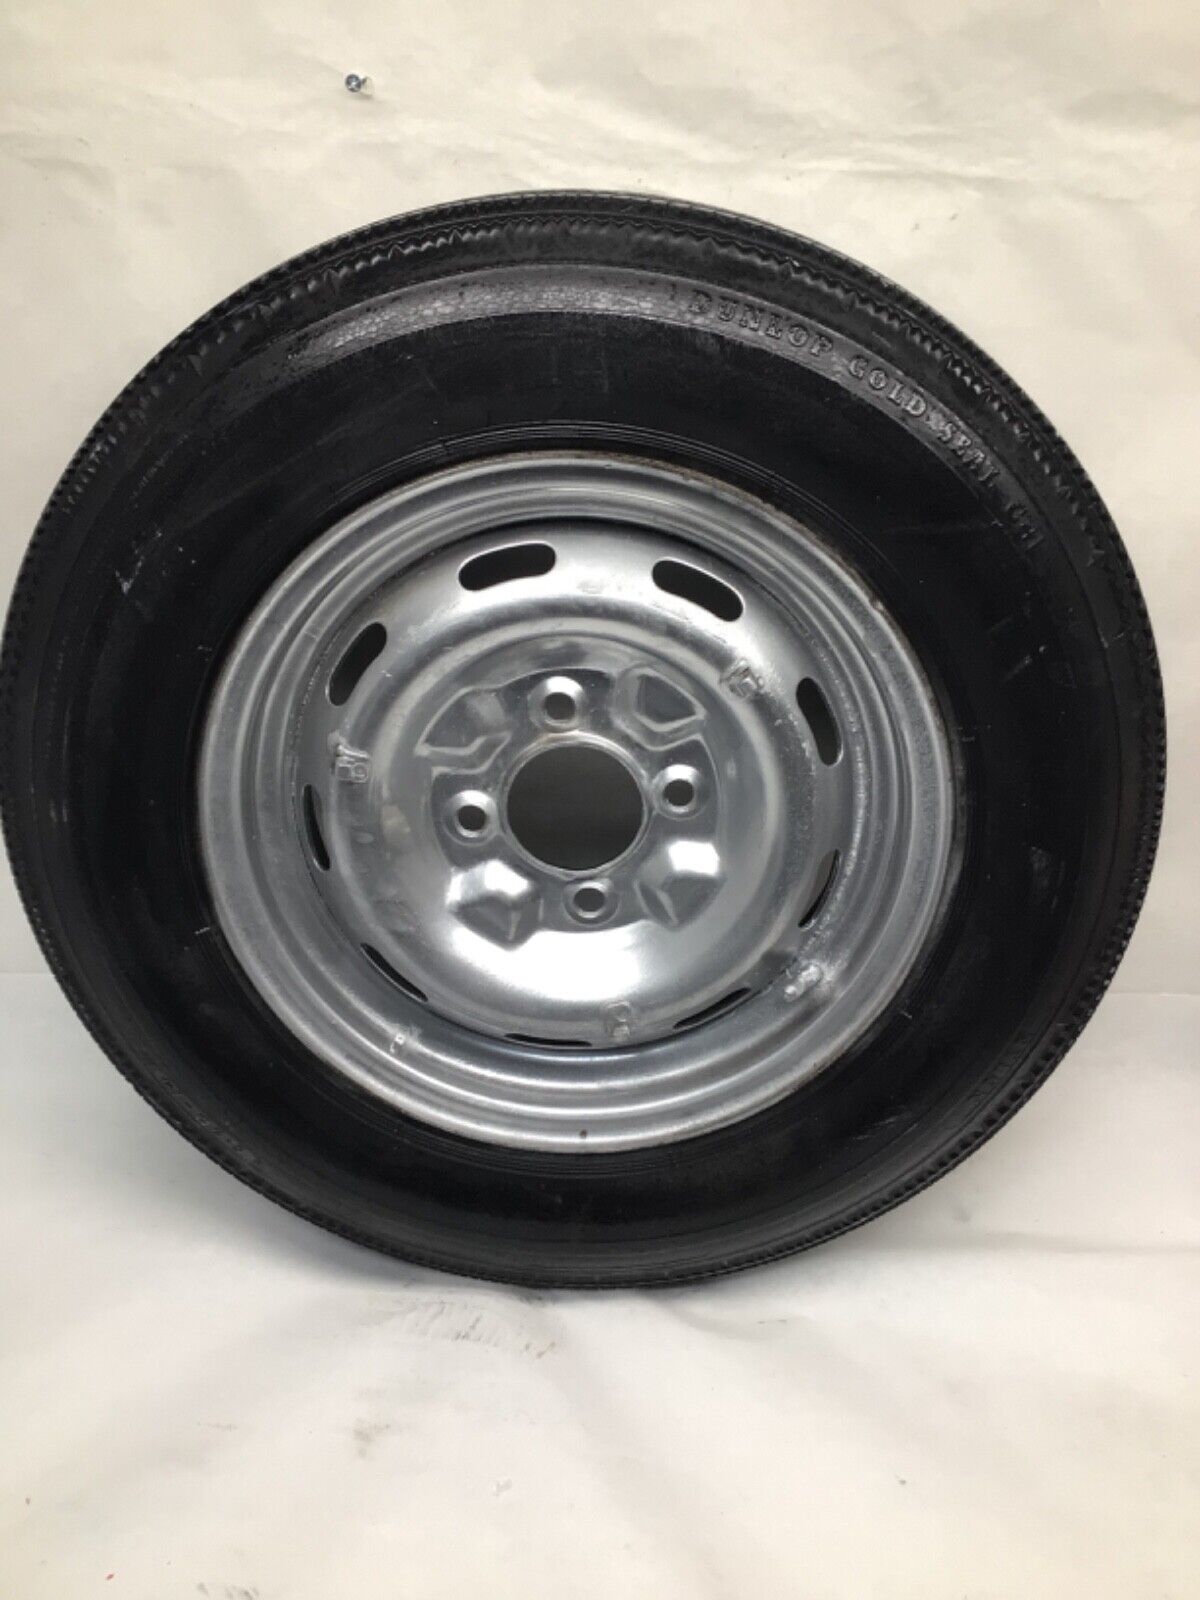 Datsun Roadster 1966 Spare Wheel & Tire 5”16”14